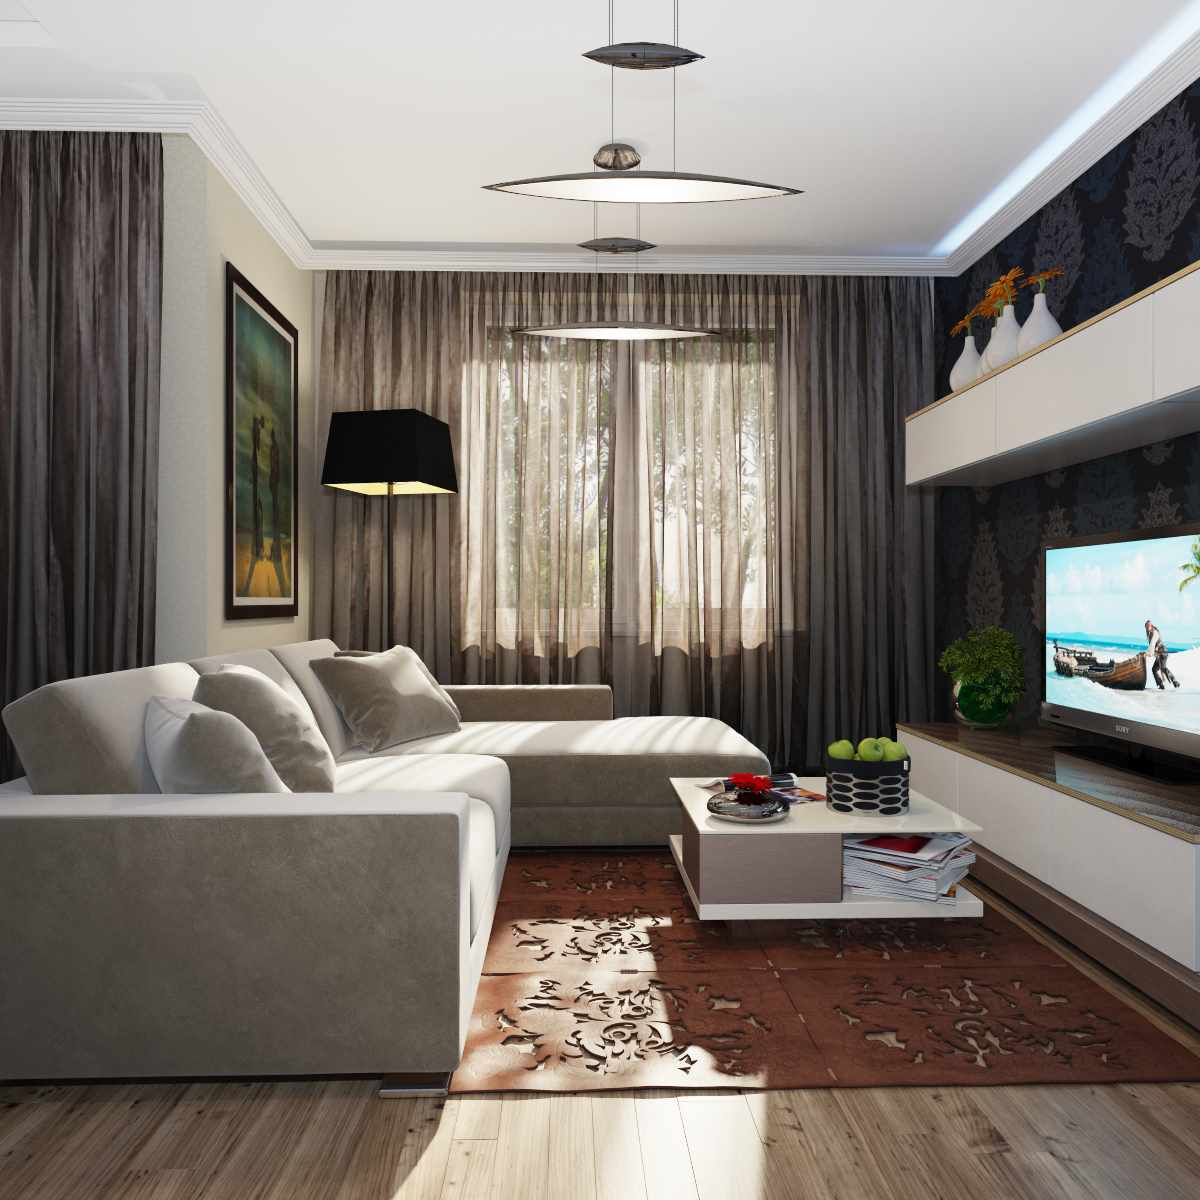 مثال على تصميم غير عادي لغرفة المعيشة 19-20 متر مربع